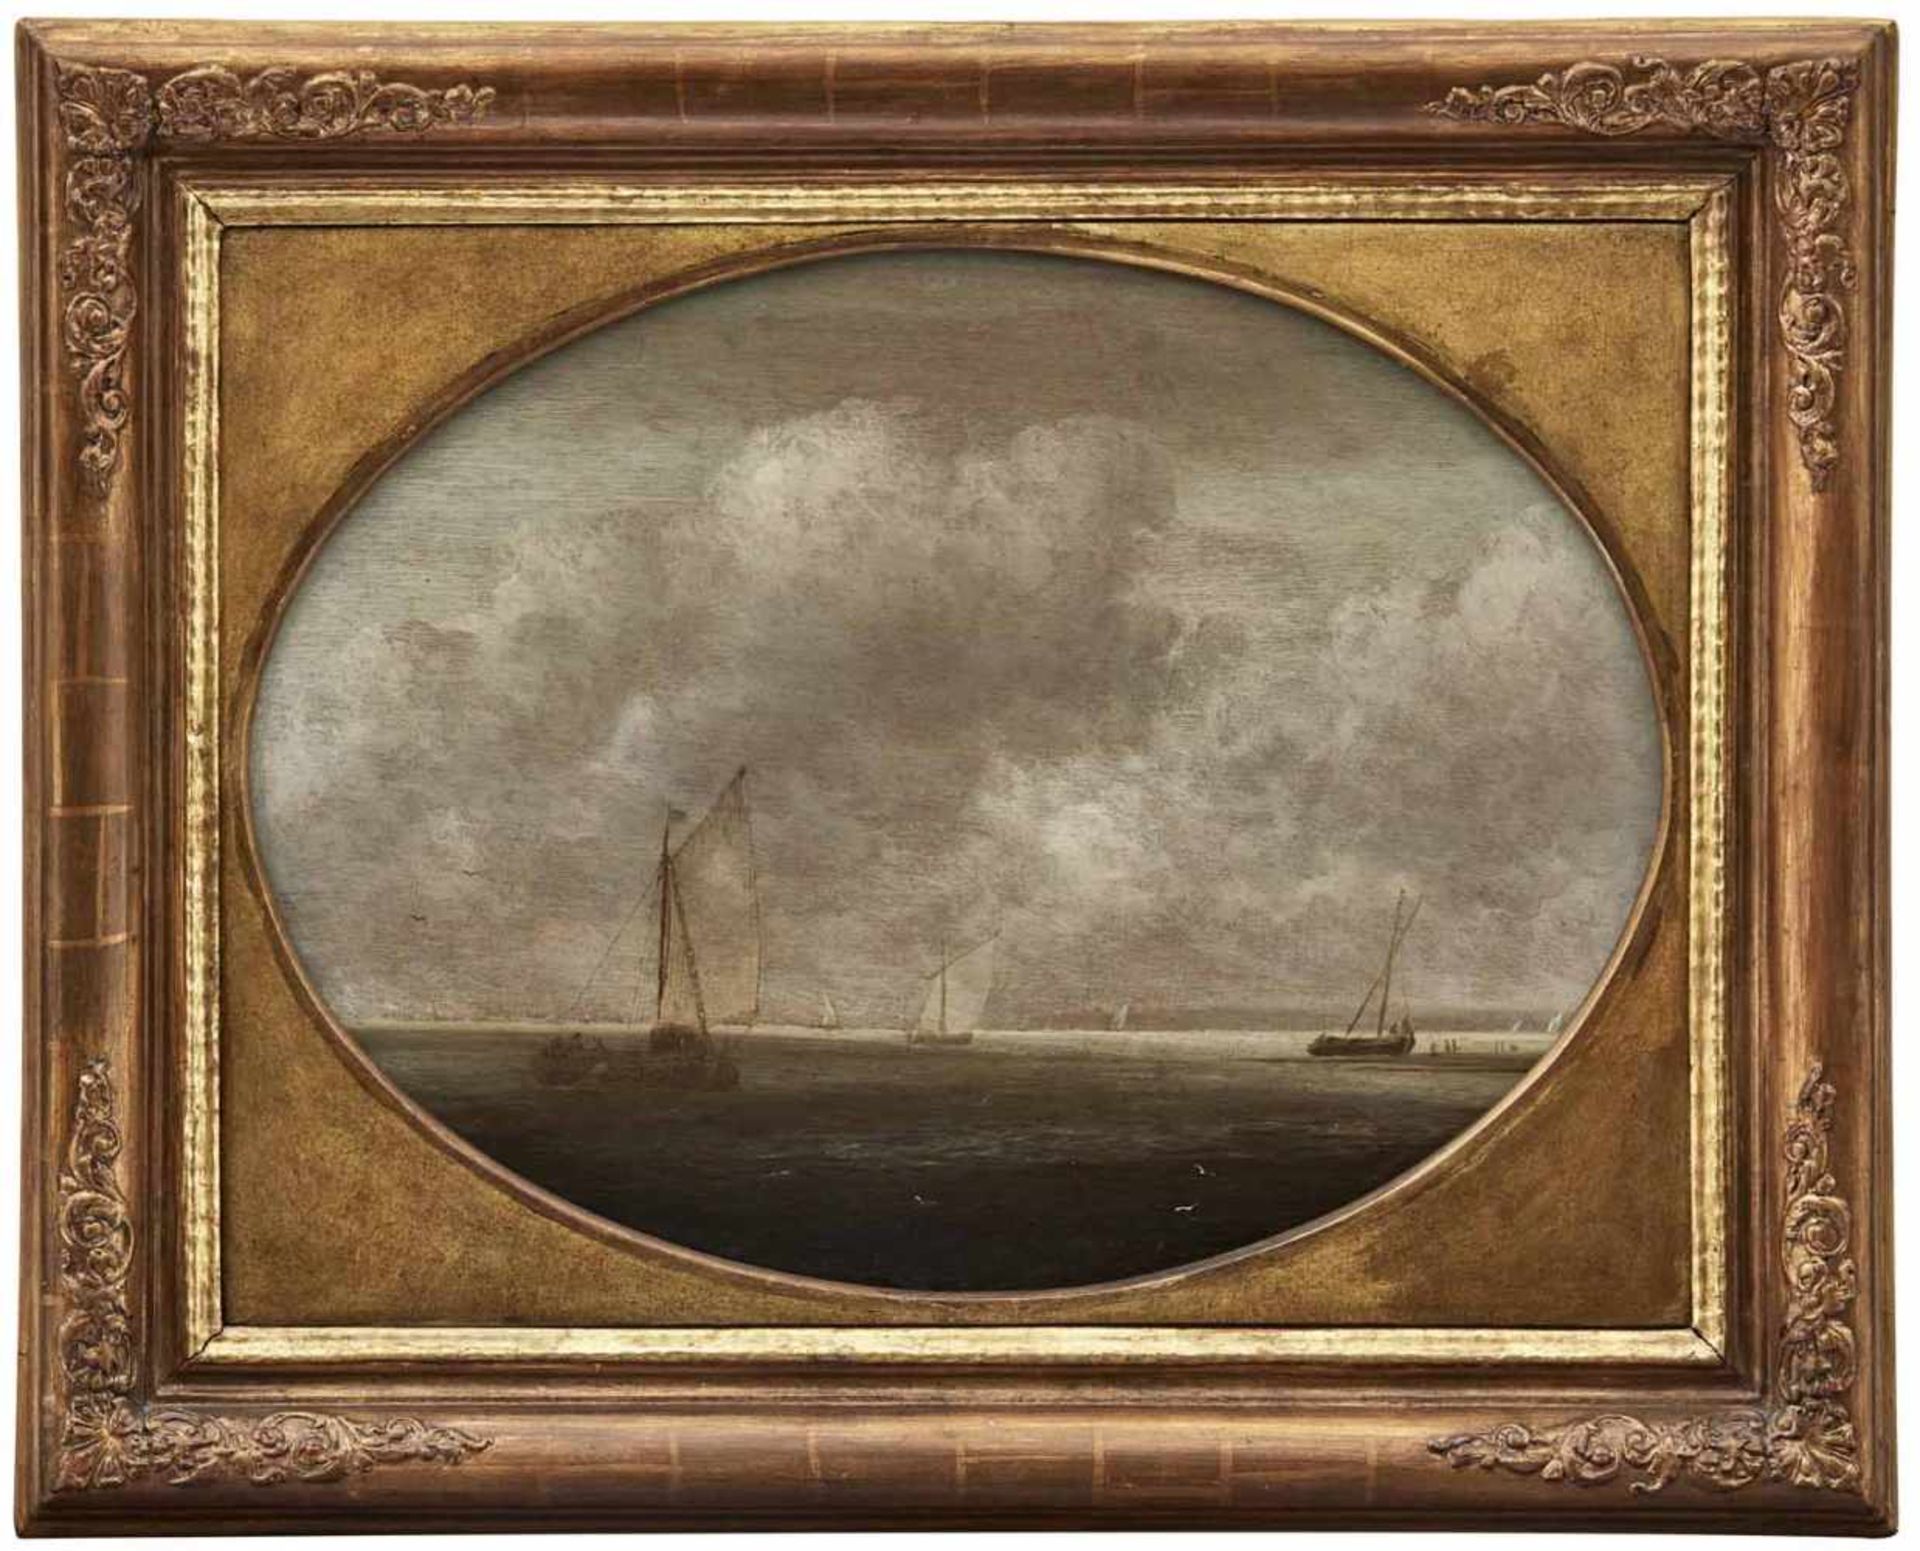 Vlieger, Simon de (Kreis)Rotterdam um 1600 - Weesp 165336 x 48 cmSegelschiffe in ruhiger See. Öl/